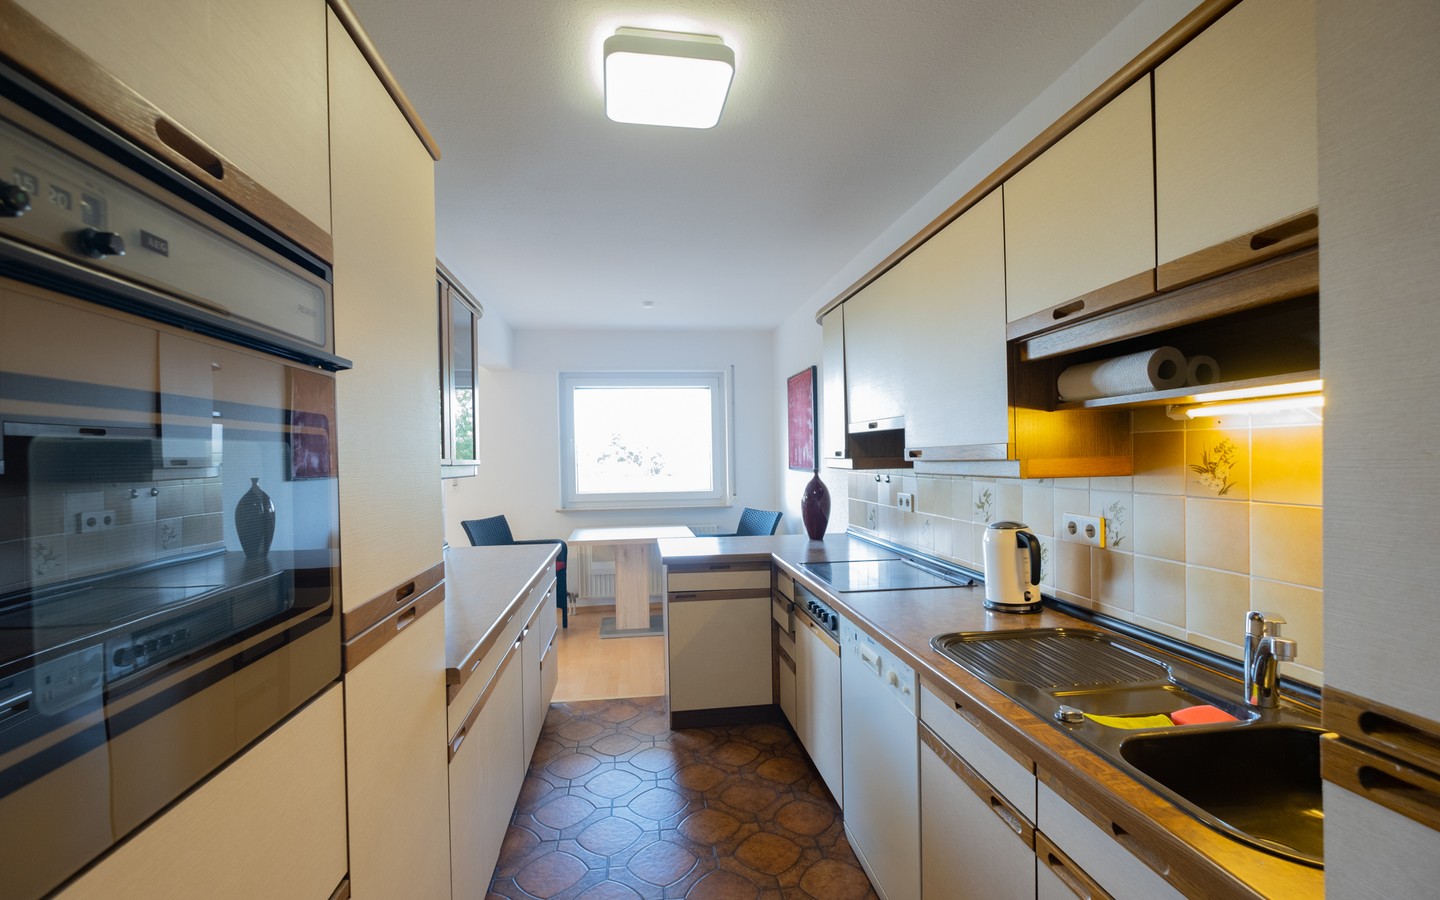 Küche - provisionsfrei in Ketsch: Top gepflegte 3,5-Zimmer-Wohnung mit großer Loggia und 2 Stellplätzen